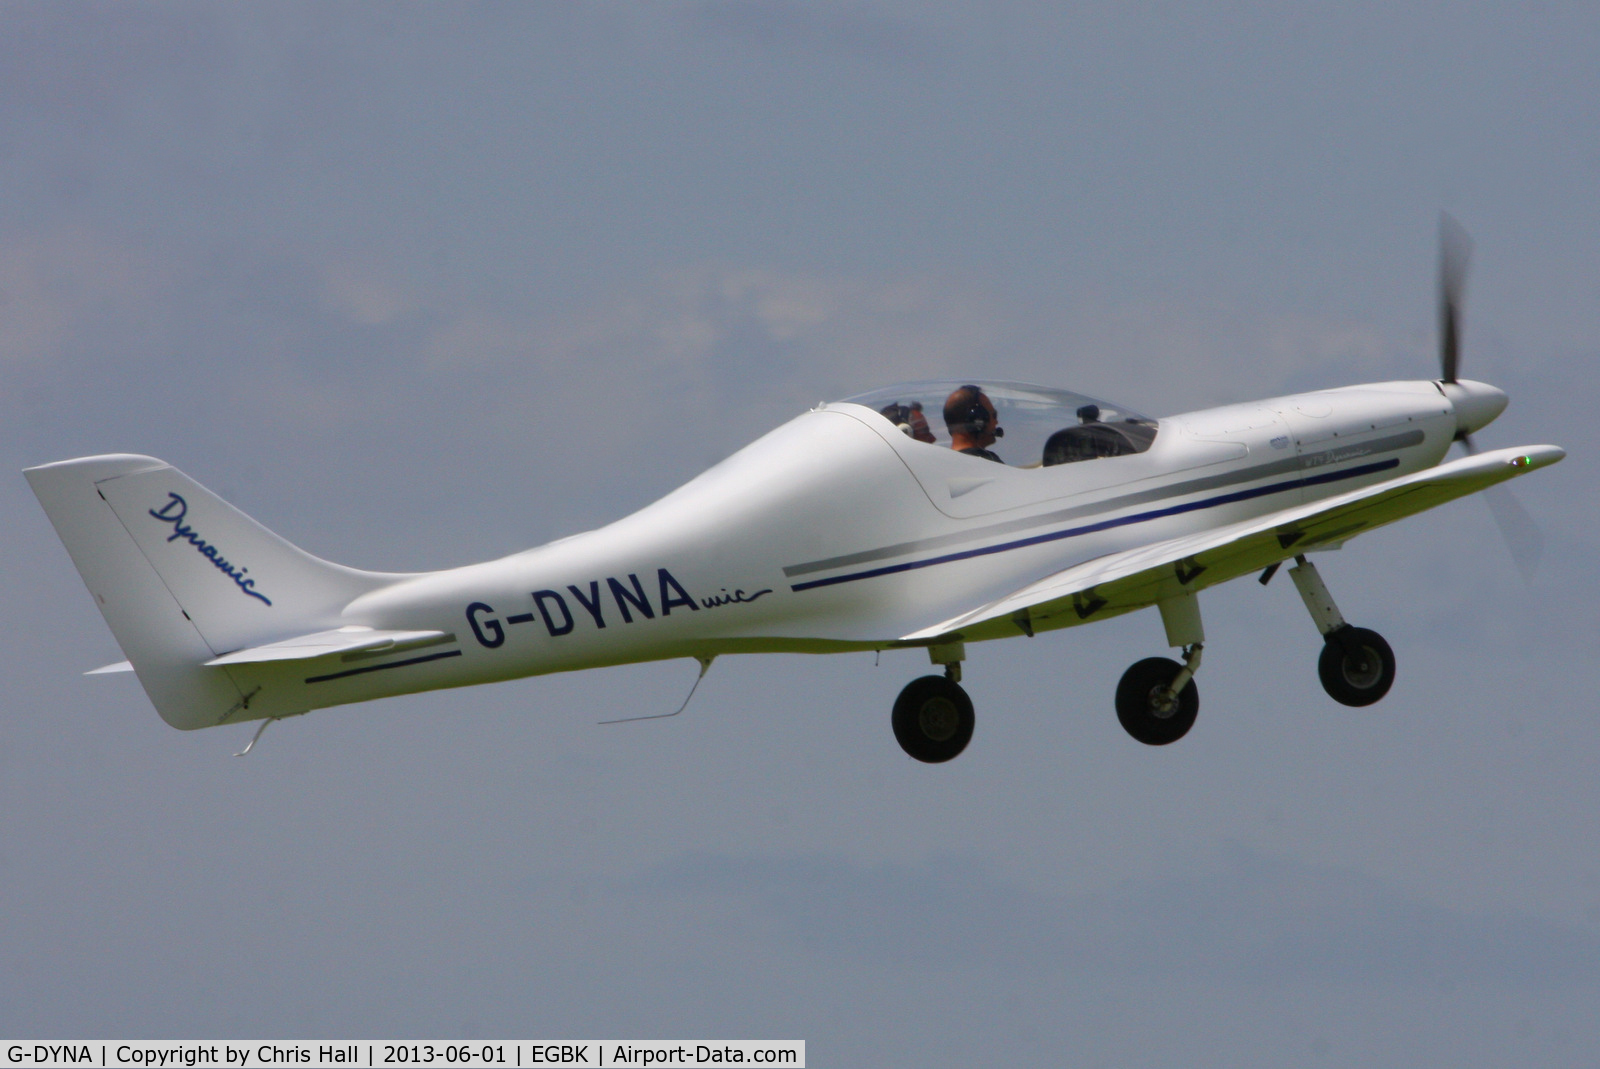 G-DYNA, 2006 Aerospool WT-9 Dynamic C/N DY135/2006, at AeroExpo 2013